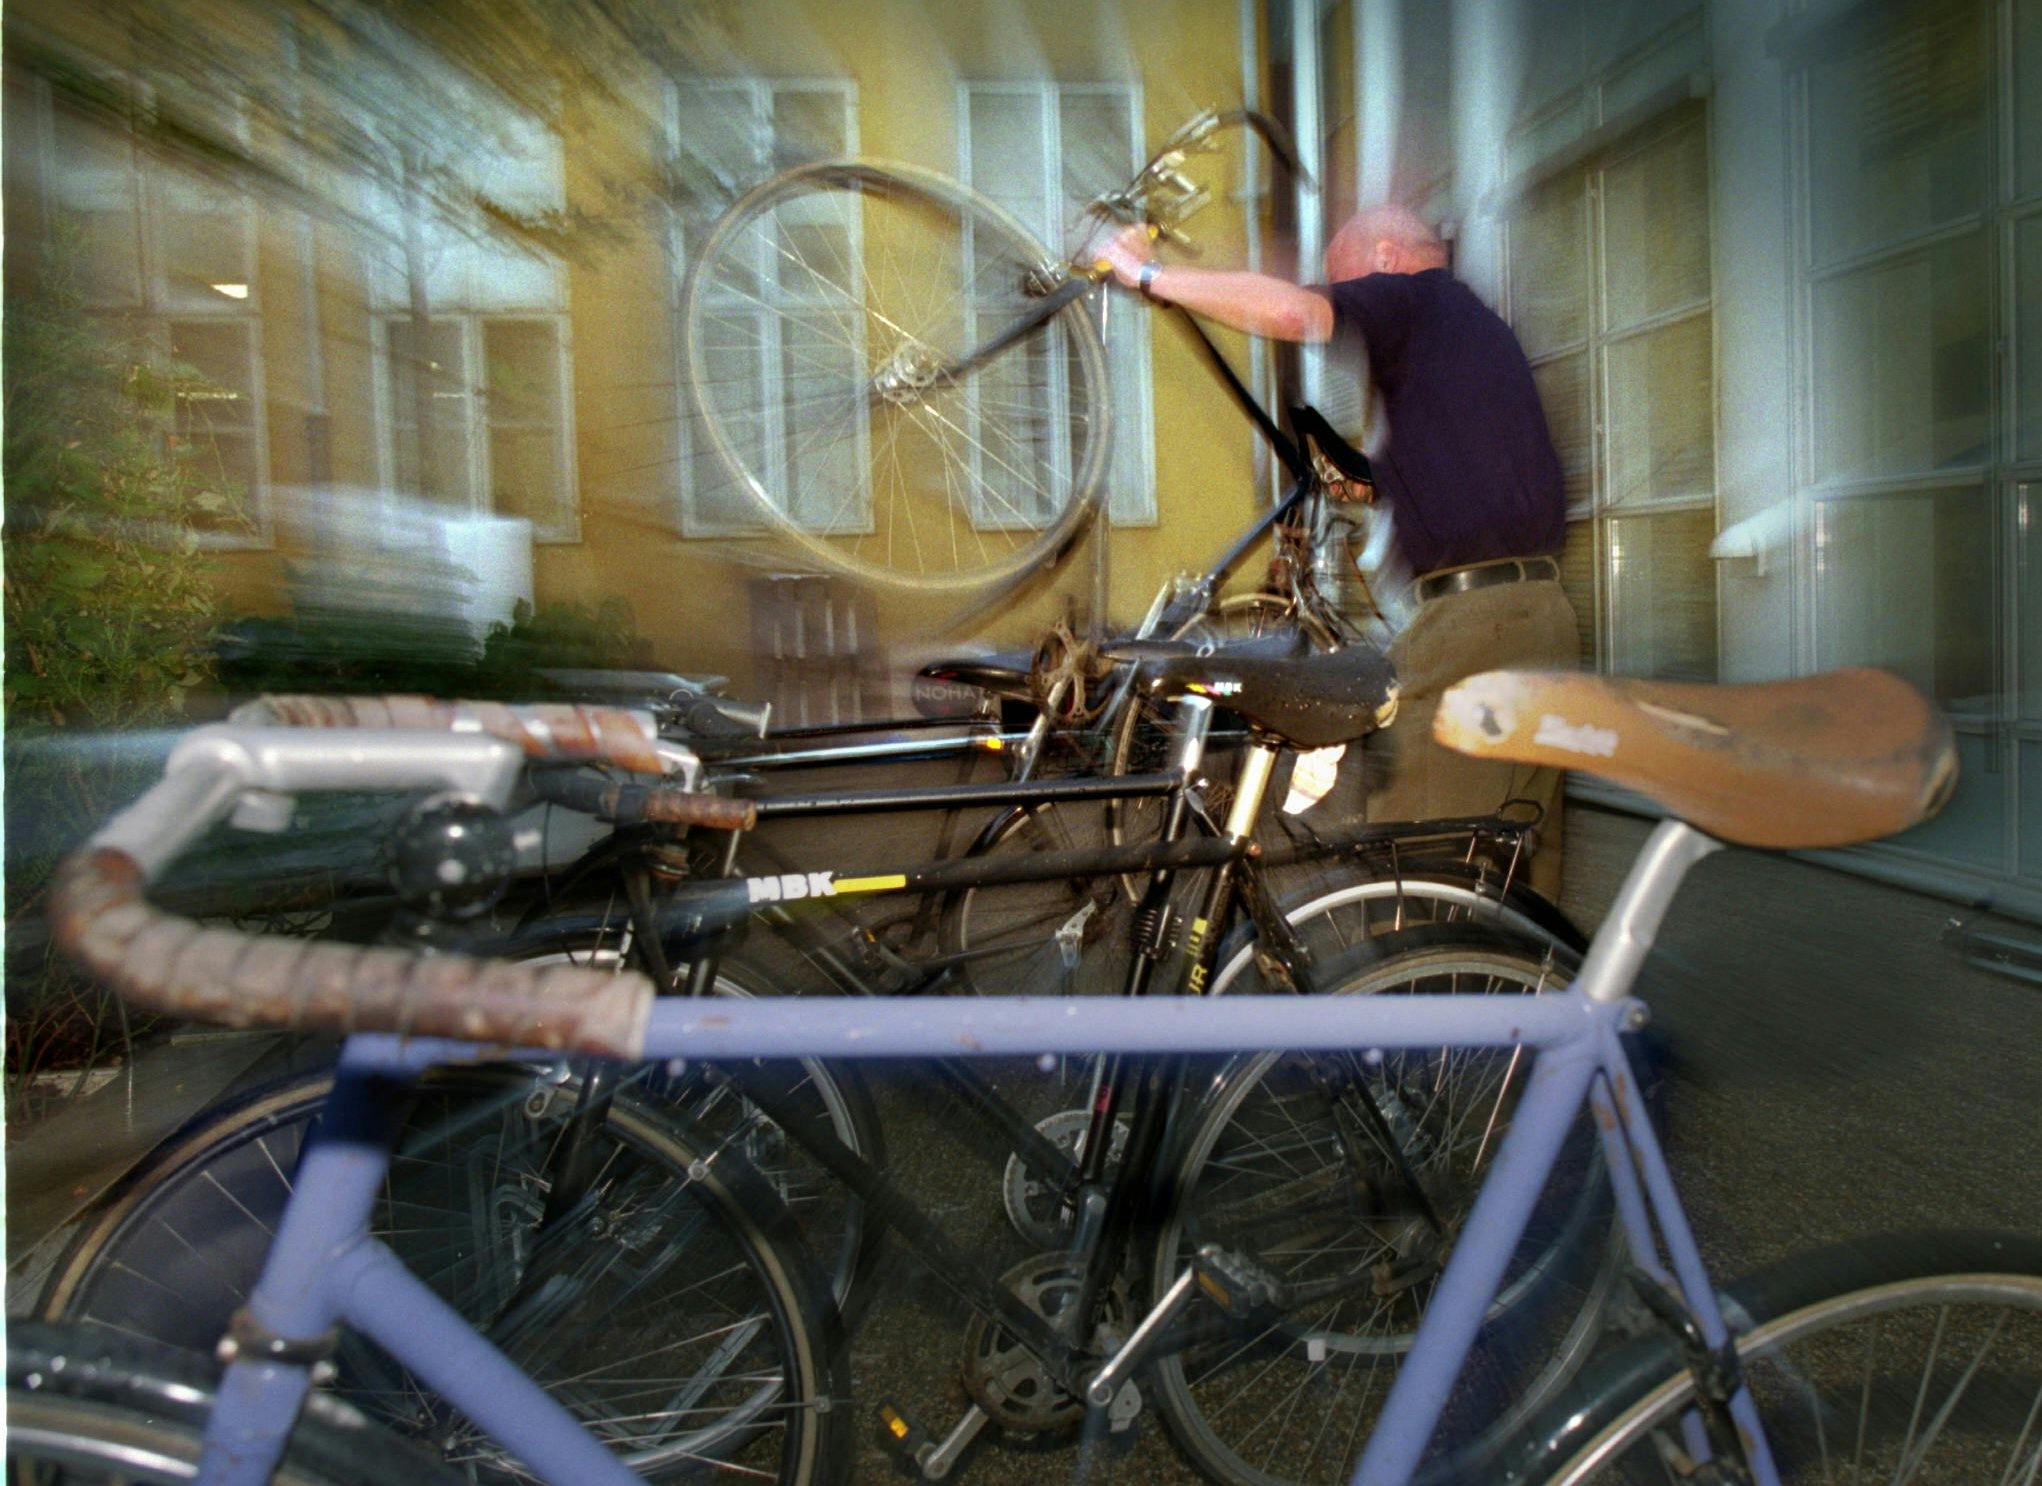 2955 cykler stjålet og bunker af kontanter: Pensionister nægter sig skyldige SE og HØR